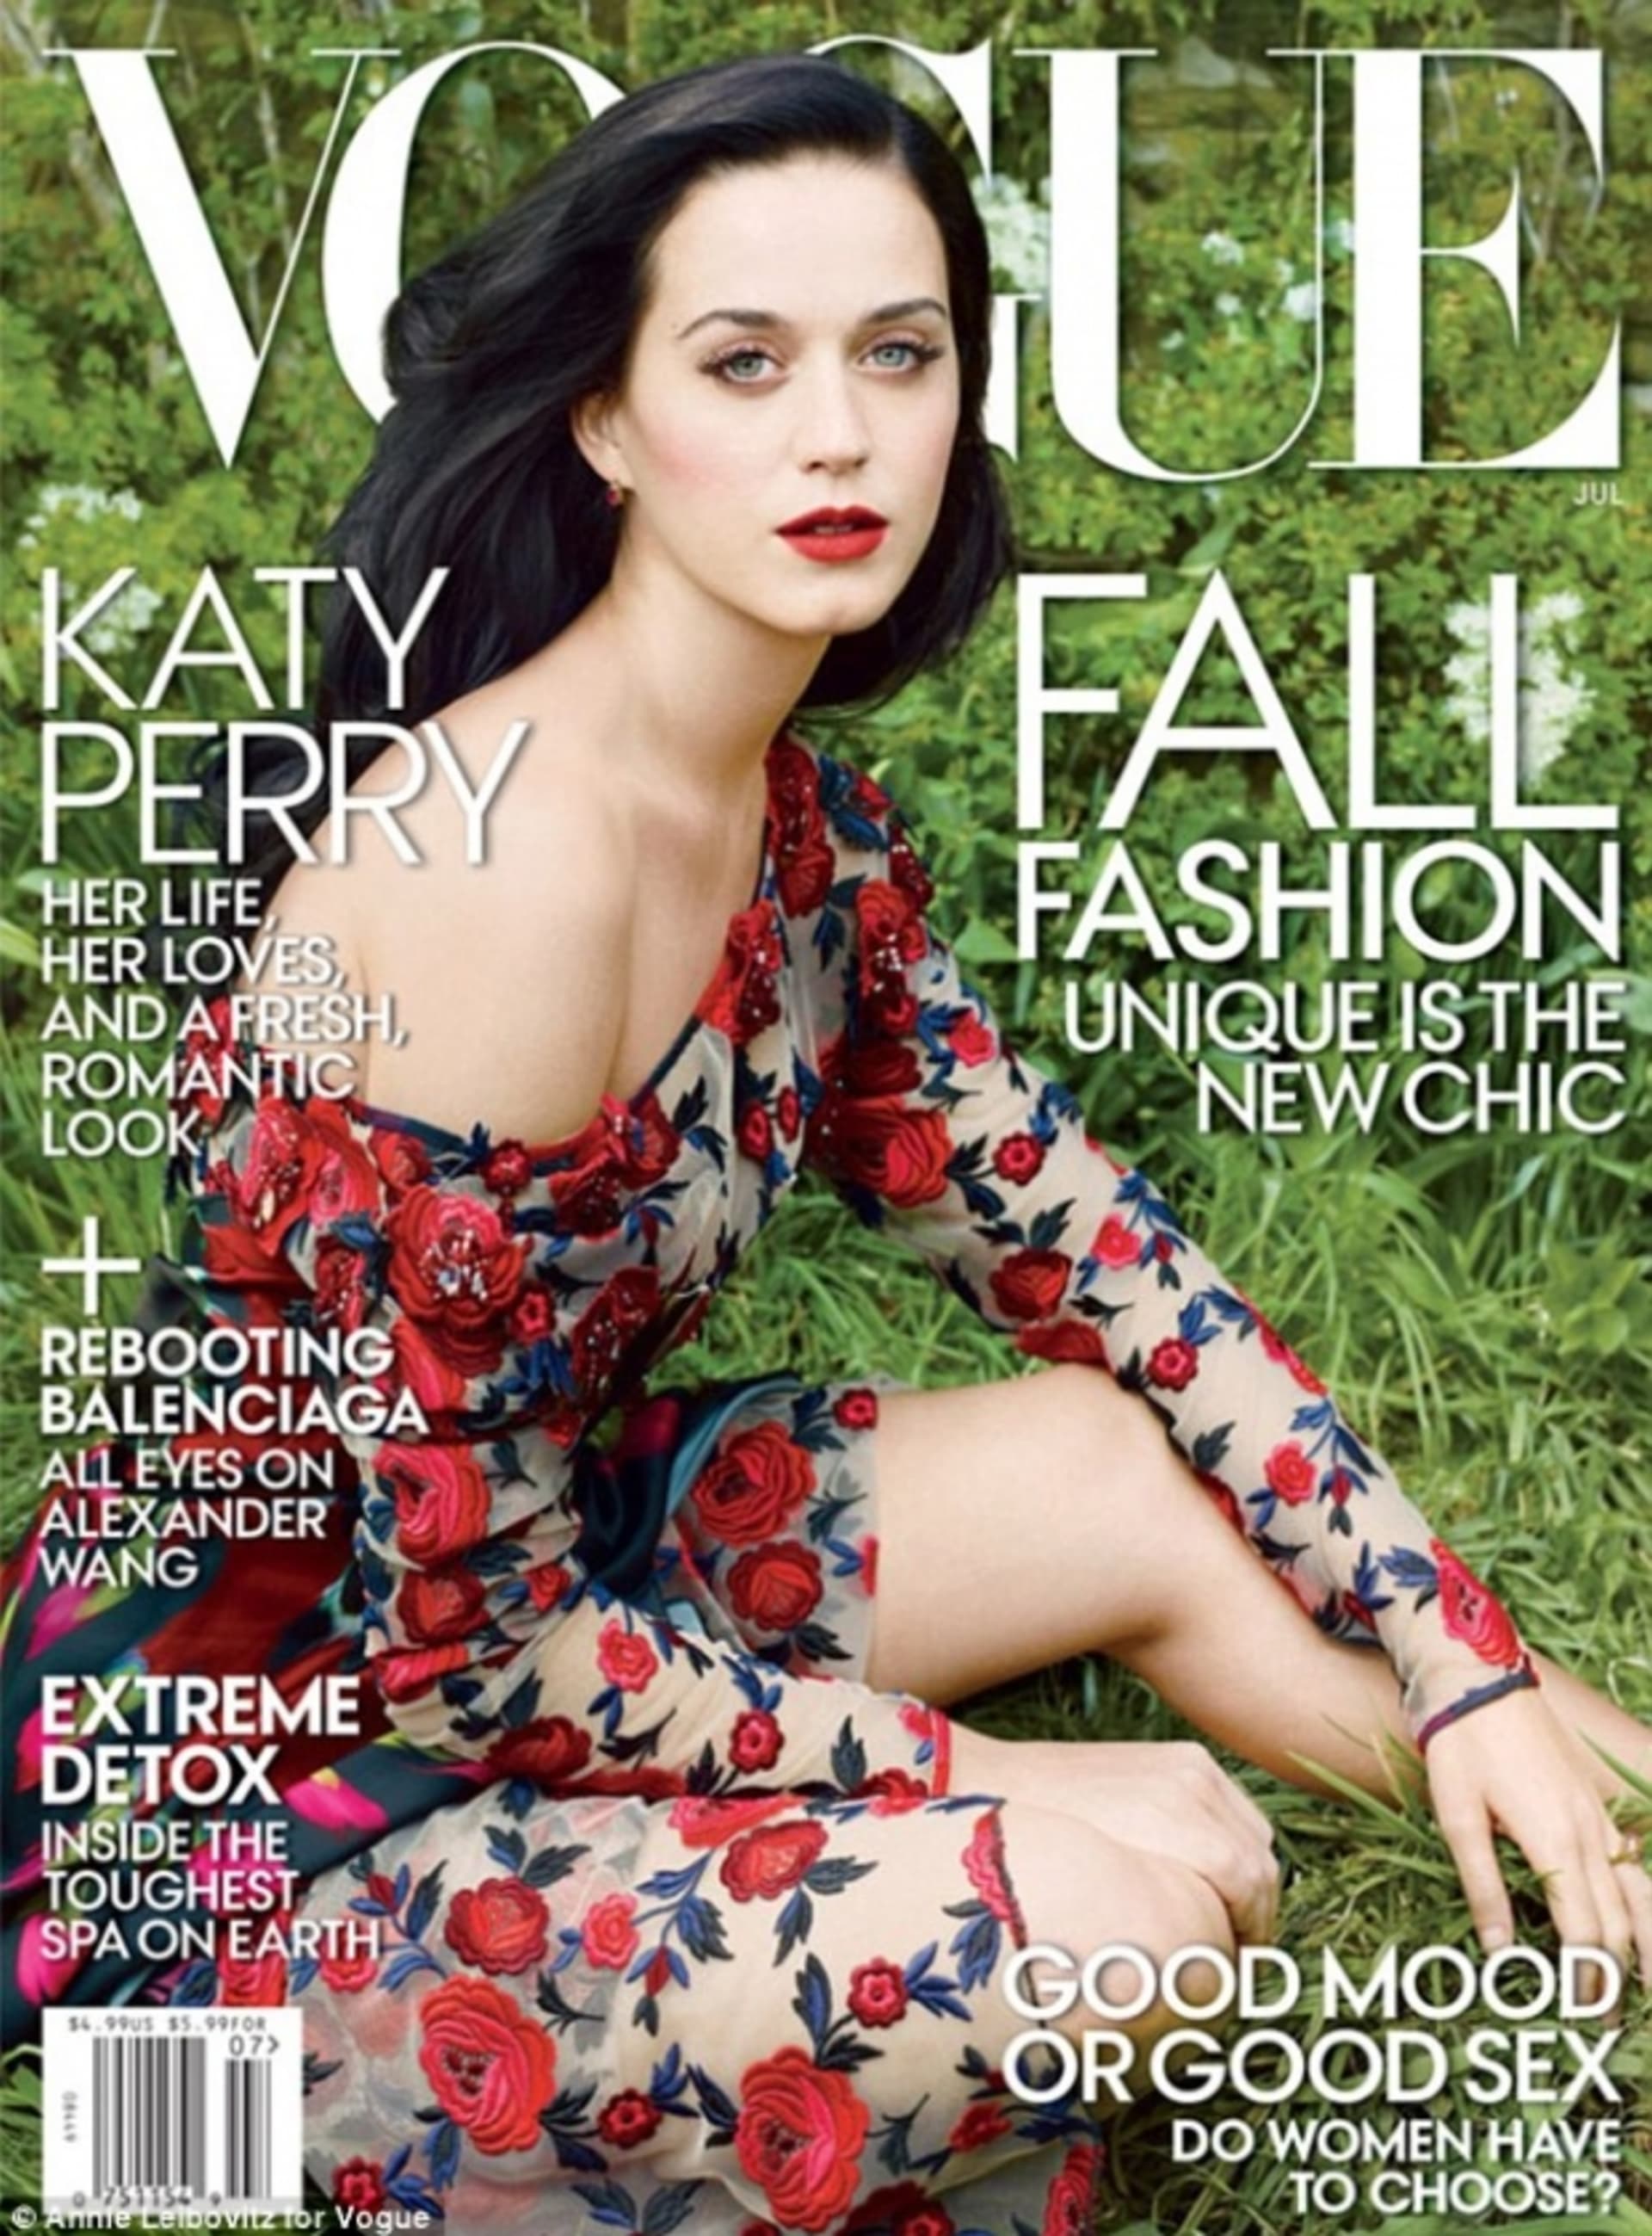 Objevit se na titulce Vogue je snem každé hvězdy, Katy se to už povedlo